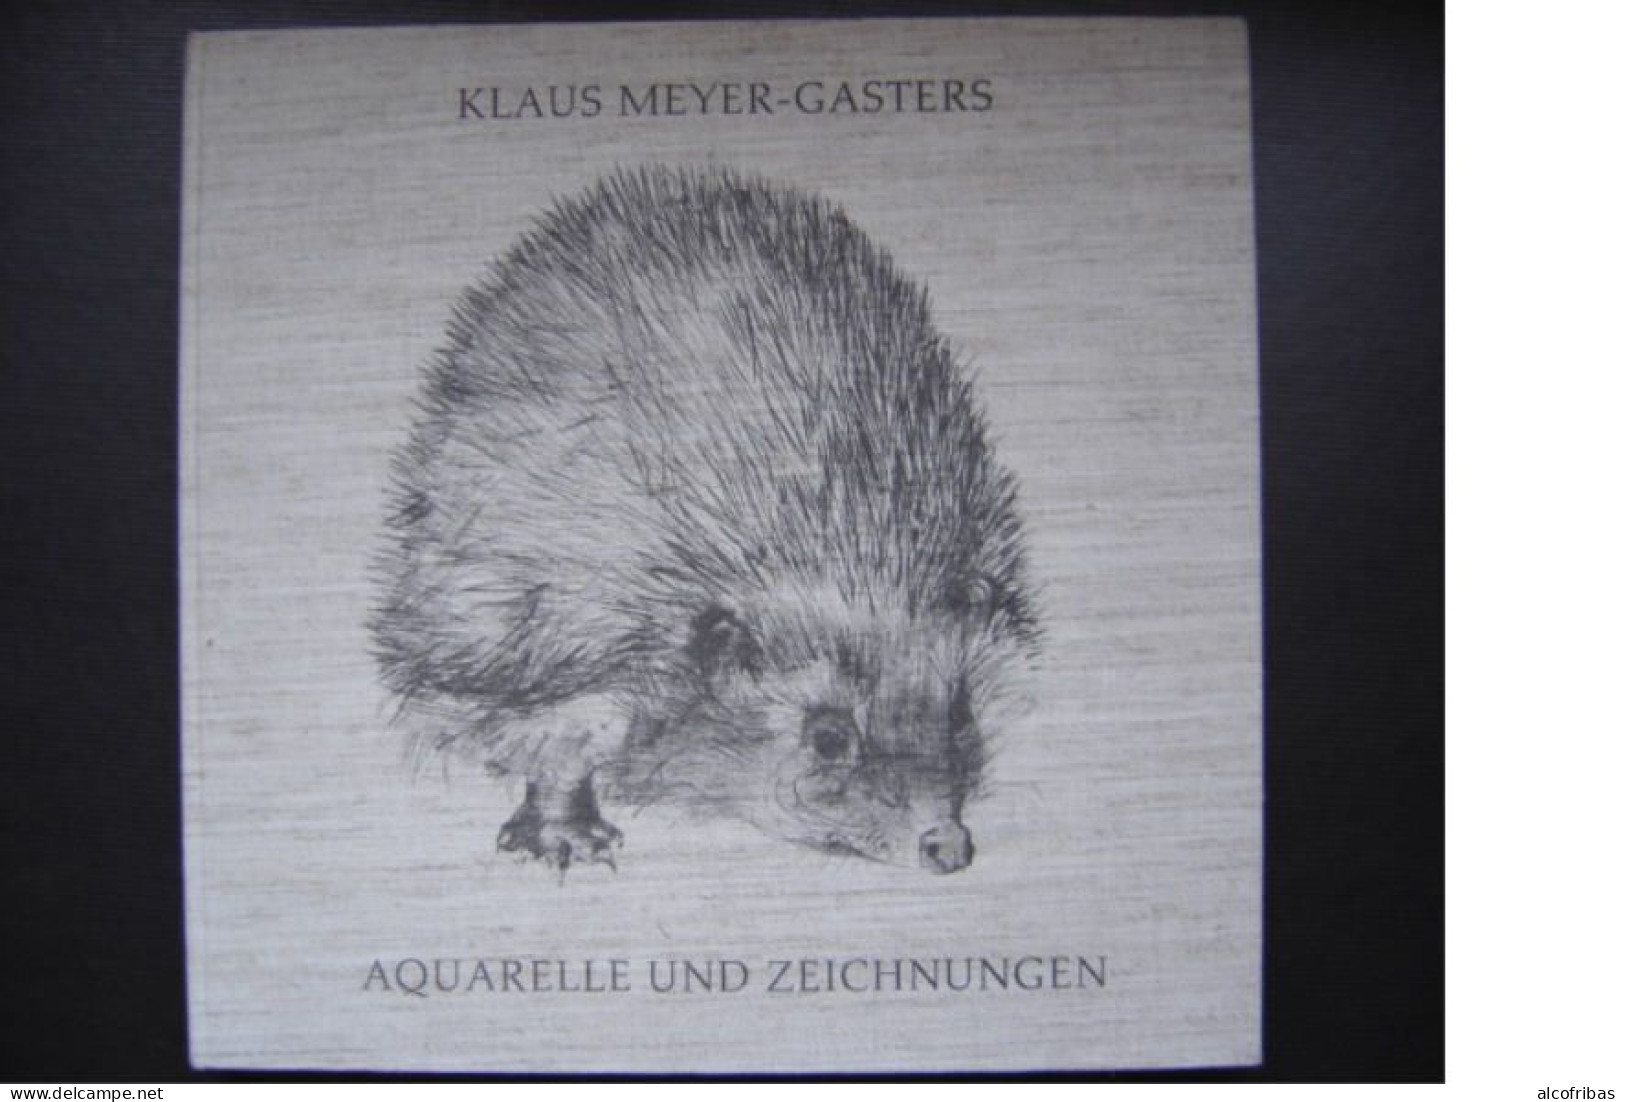 Klaus Meyer Gasters Aquarelle Und Zeichnungen Aquarelles Et Dessins 1955 1985 - Malerei & Skulptur